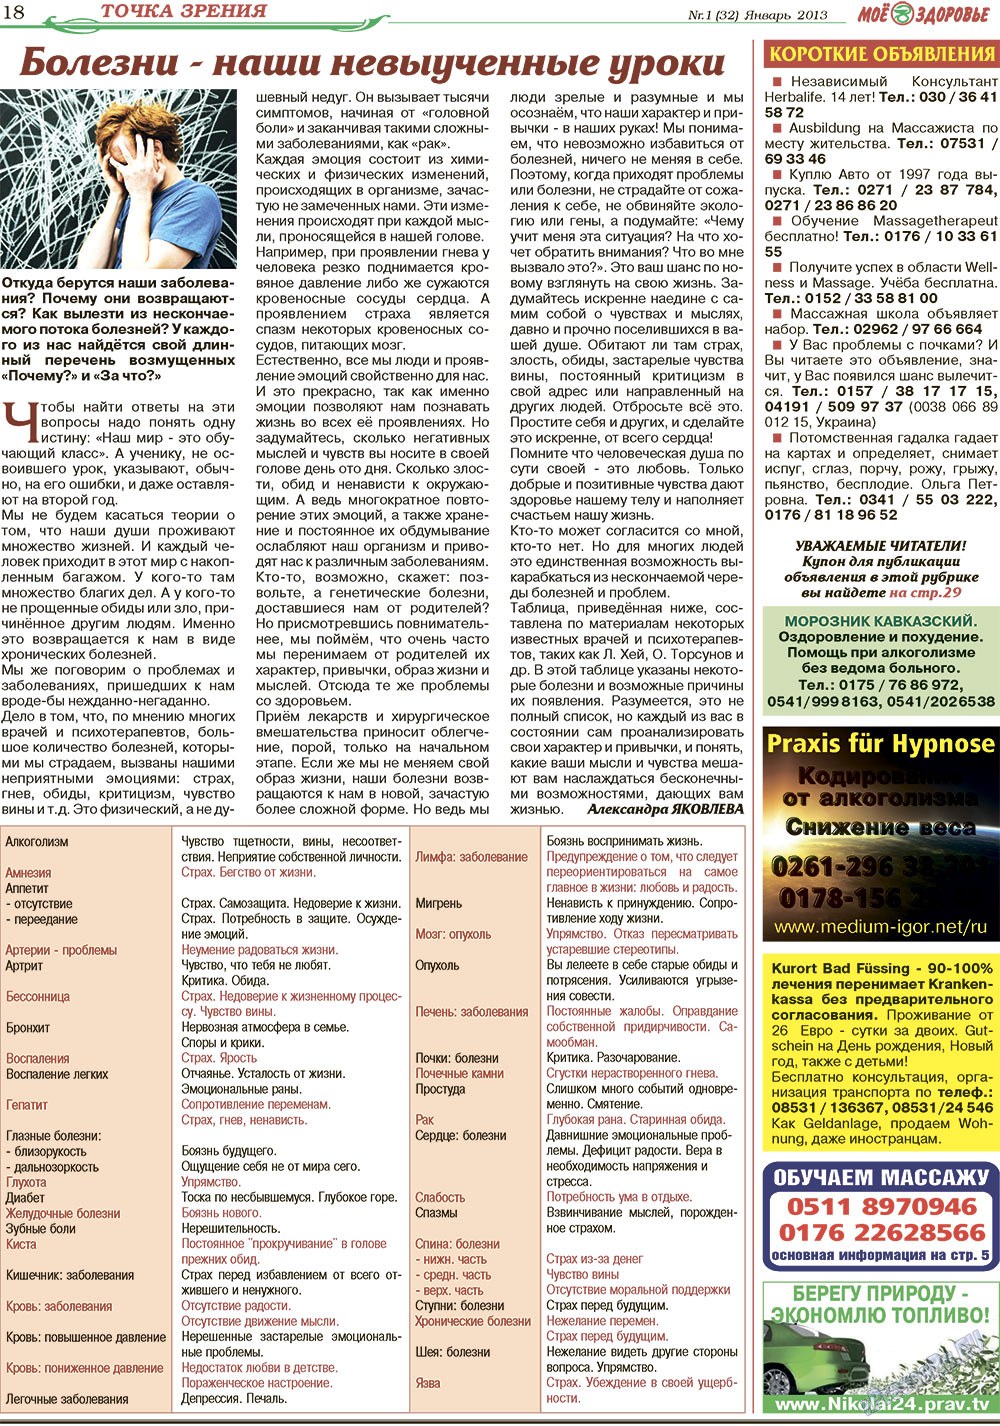 Кругозор, газета. 2013 №1 стр.18